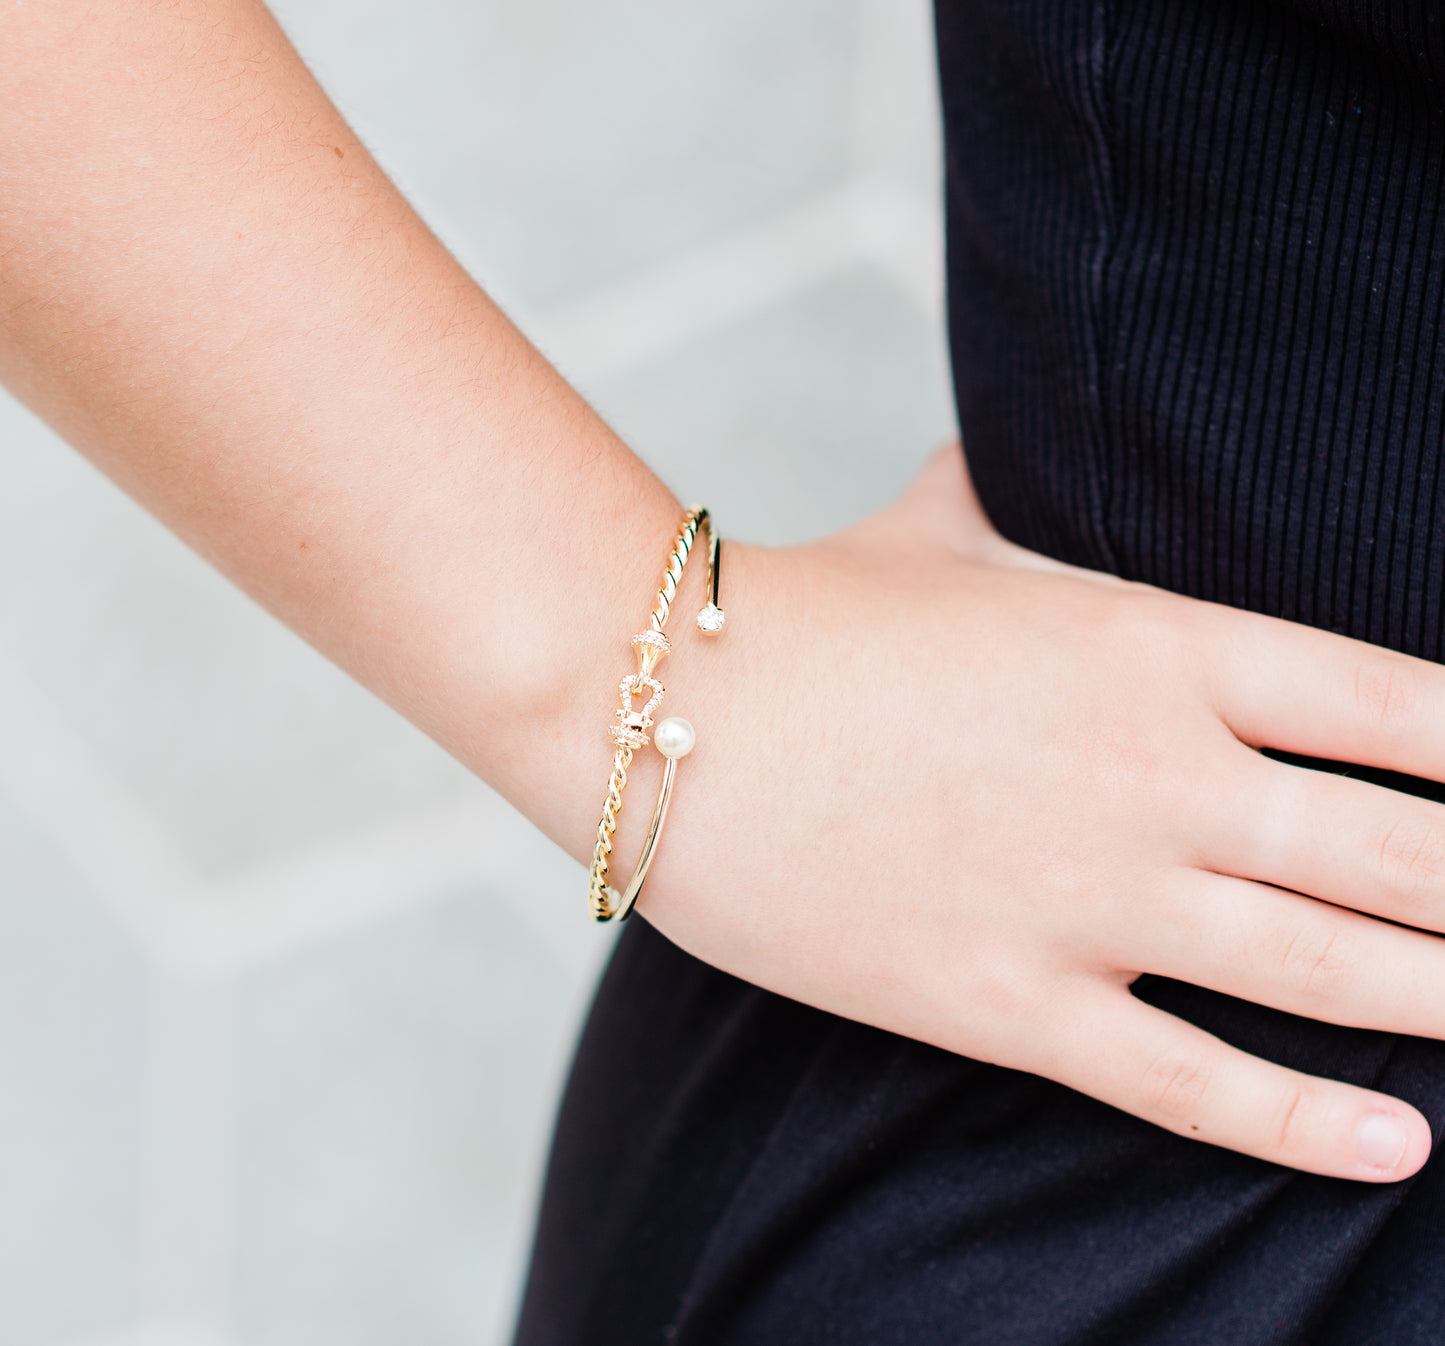 Chloe Pearl and Crystal Bangle Bracelet(18K Gold Filled)